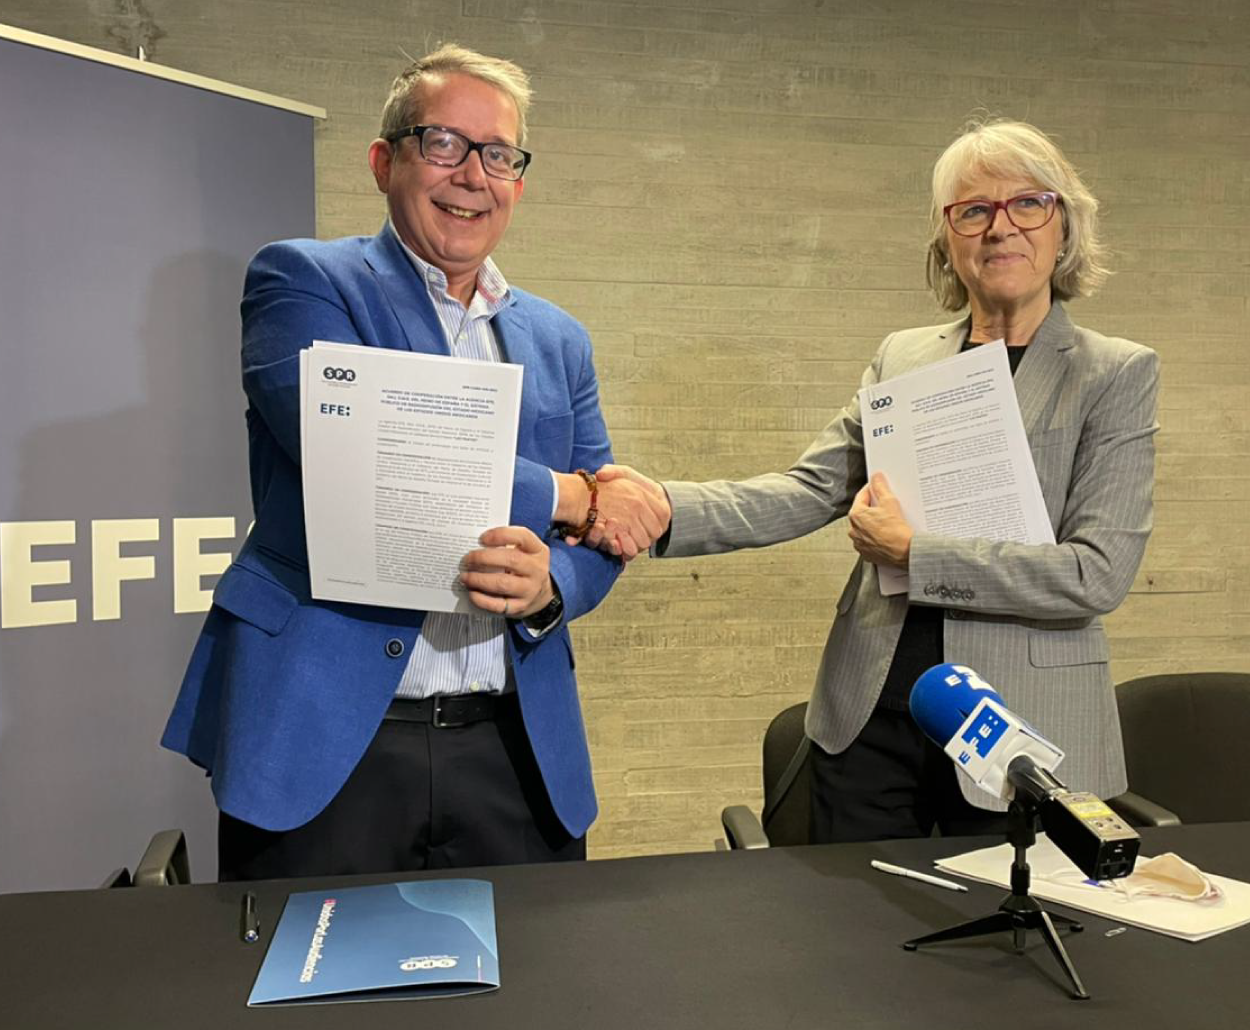 Agencia Efe y SPR firman acuerdo de cooperación para combatir noticias falsas